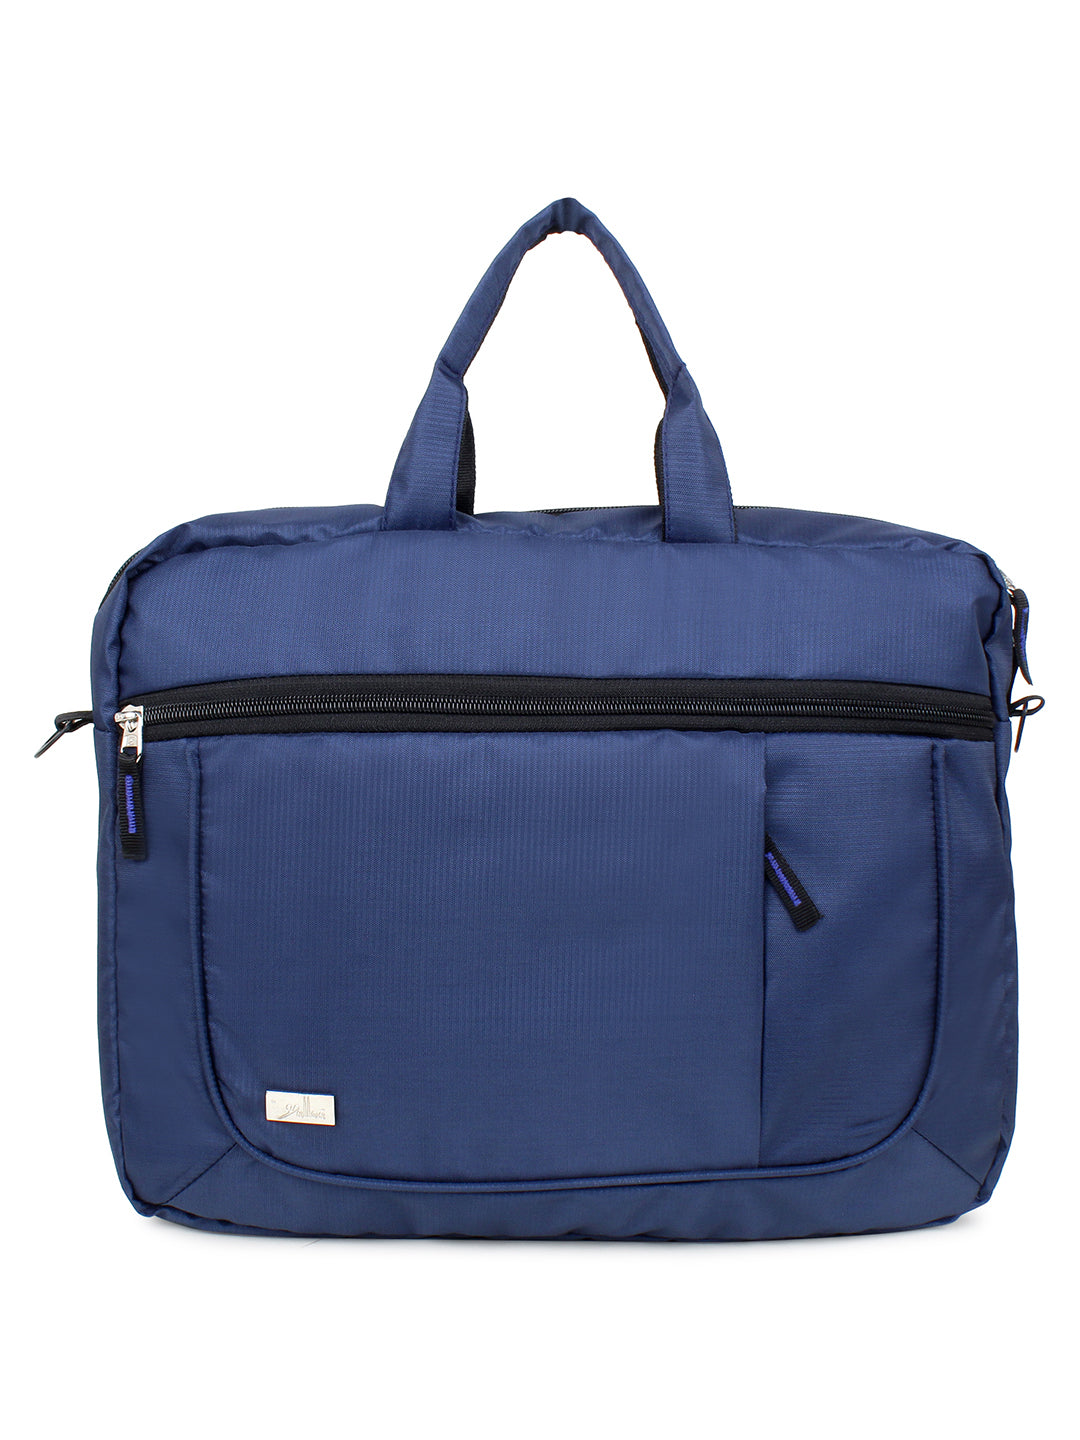 Blue Multi Compartment Laptop Bag